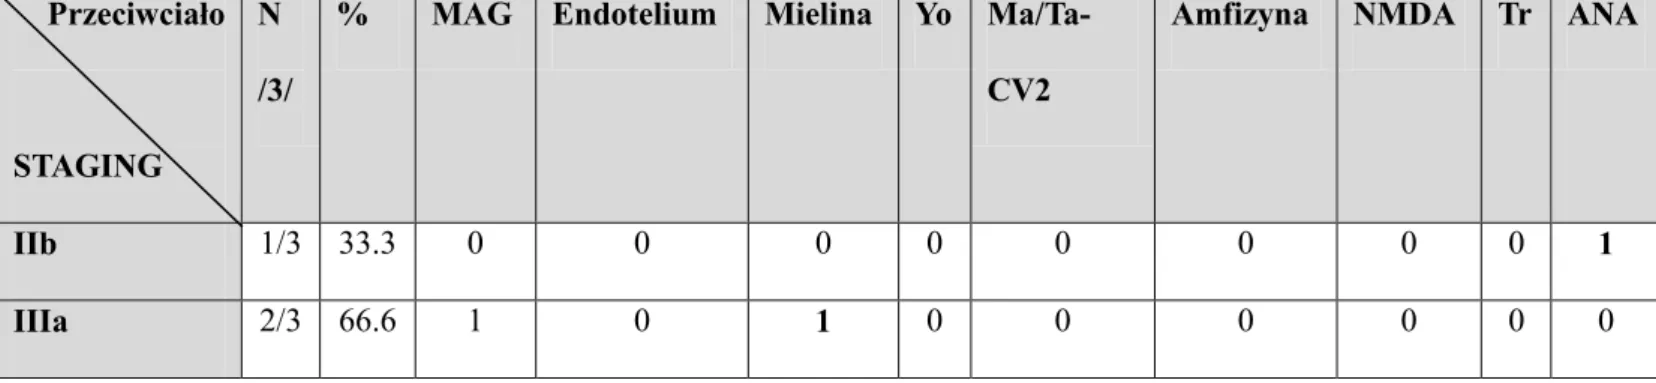 Tabela 20.  Zaawansowanie raka błony śluzowej  macicy wg FIGO u  oraz  zmarłych   seropozytywnych pacjentekw którejkolwiek grupie przeciwciał 